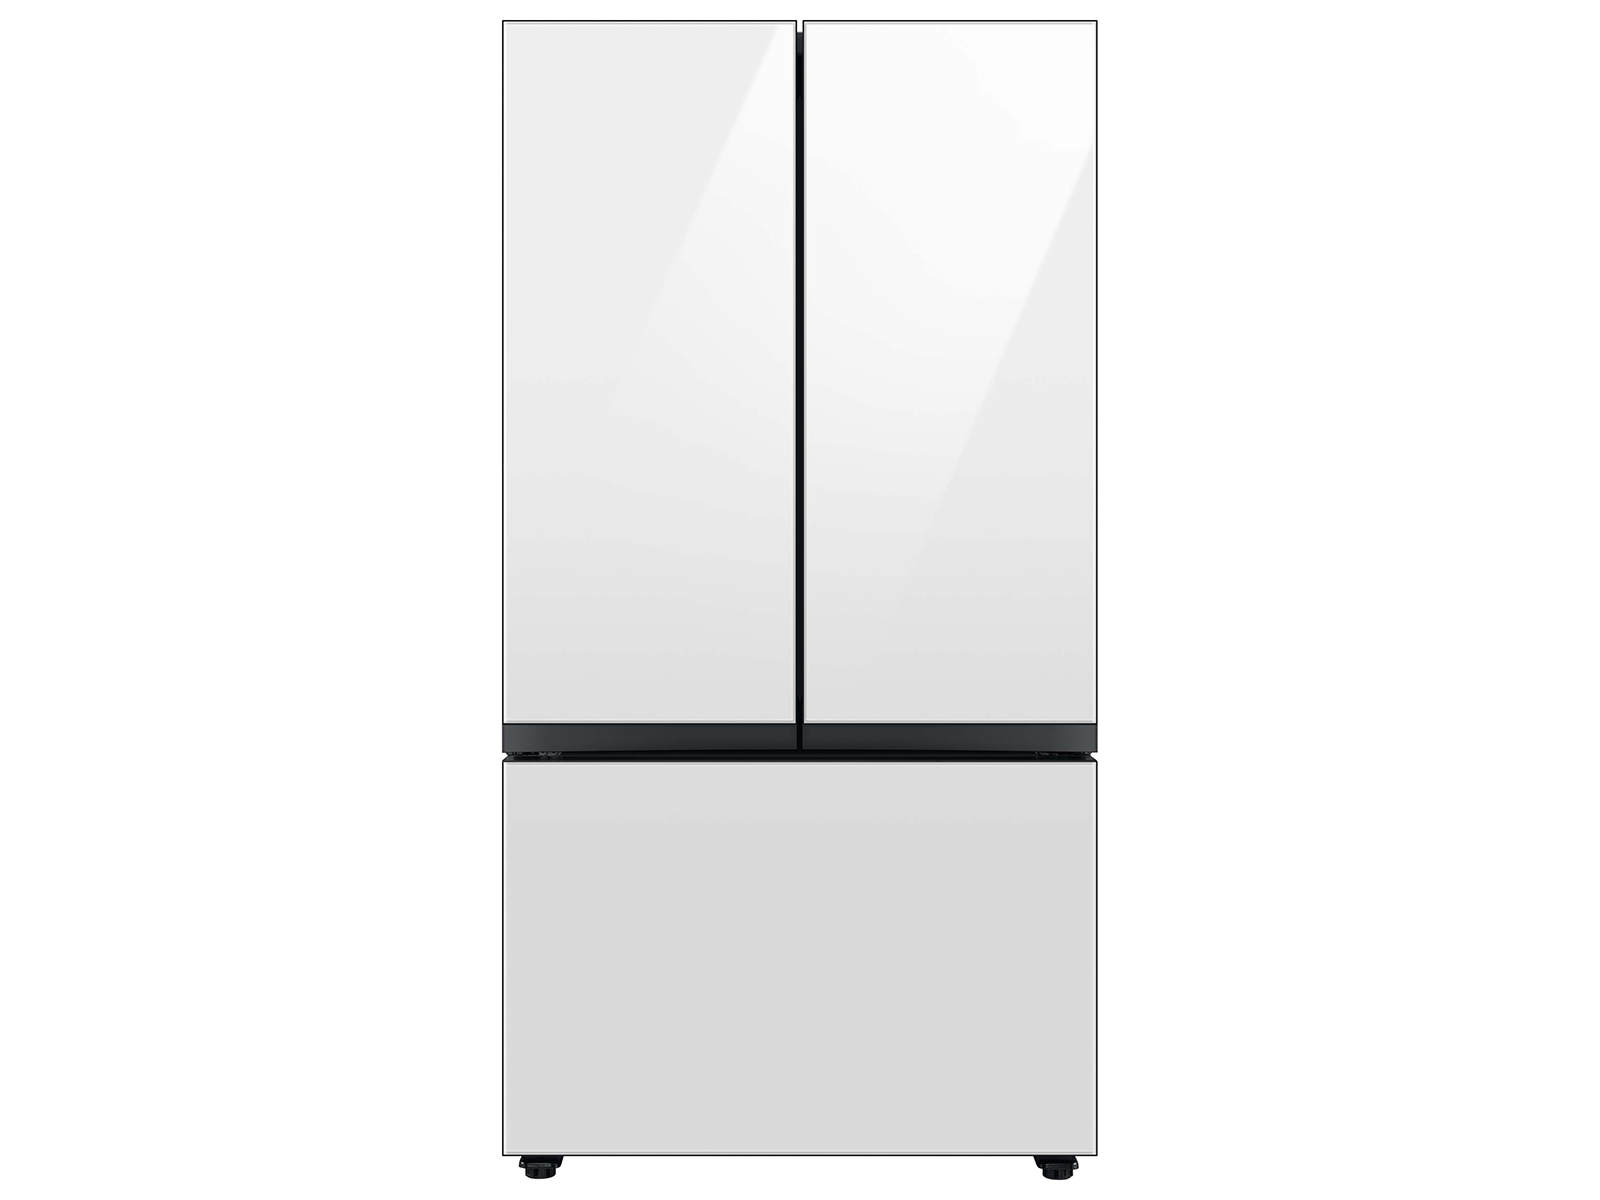 Photos - Fridge Samsung Bespoke 3-Door French Door Refrigerator  with AutoFill (24 cu. ft.)